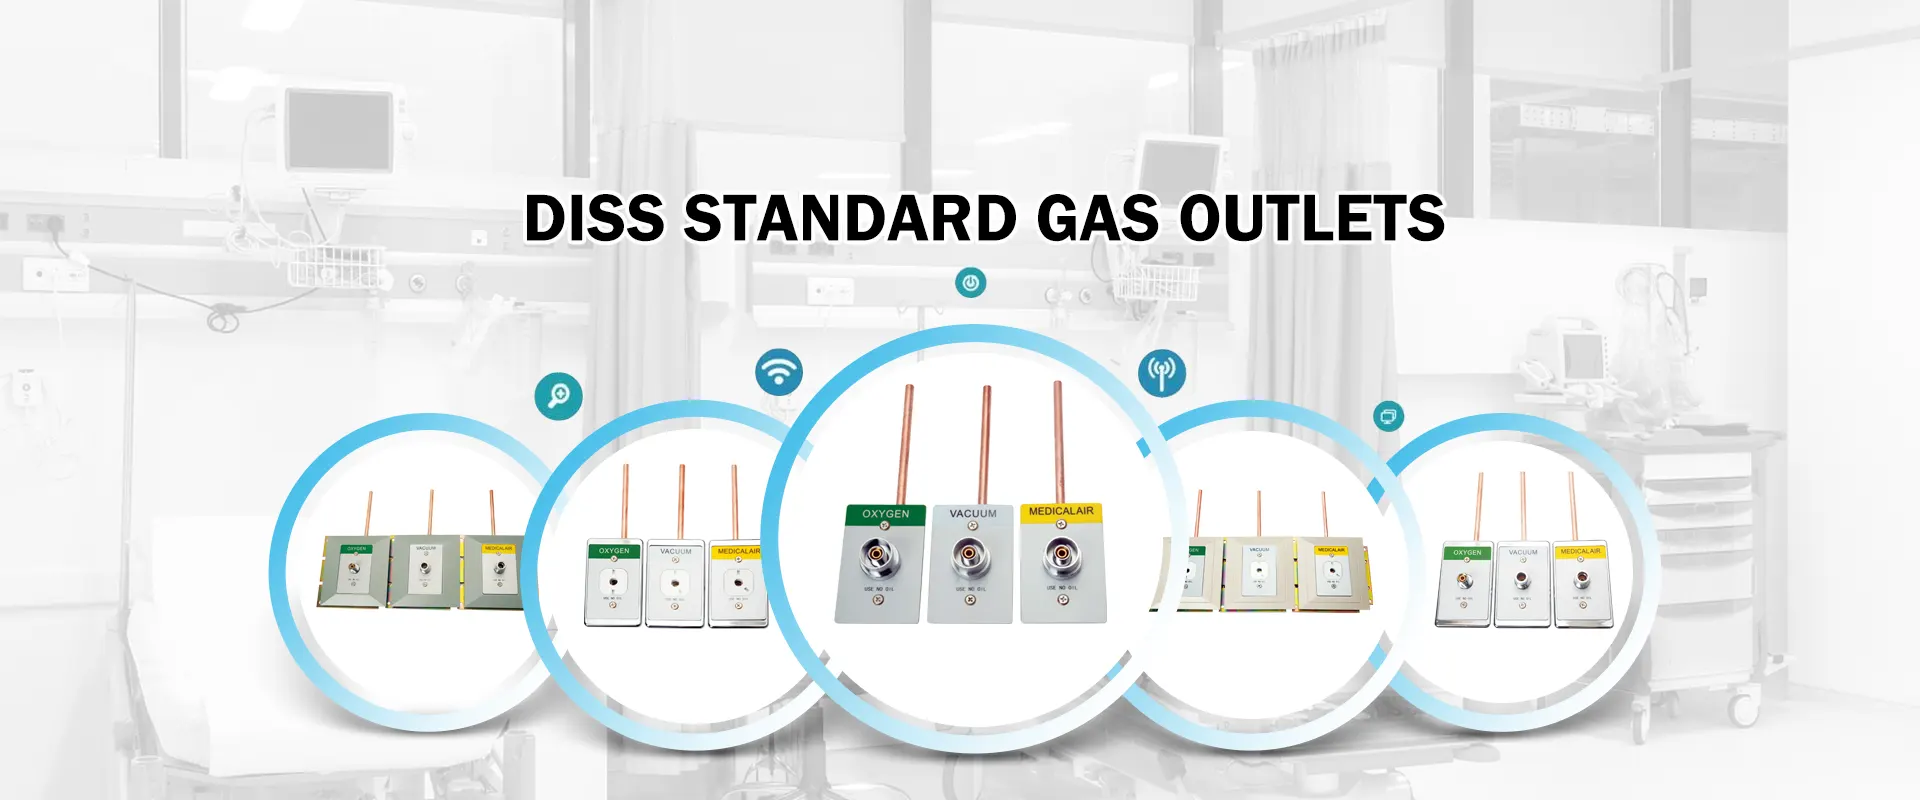 Kiina Diss Standard Gas Outlets valmistaa